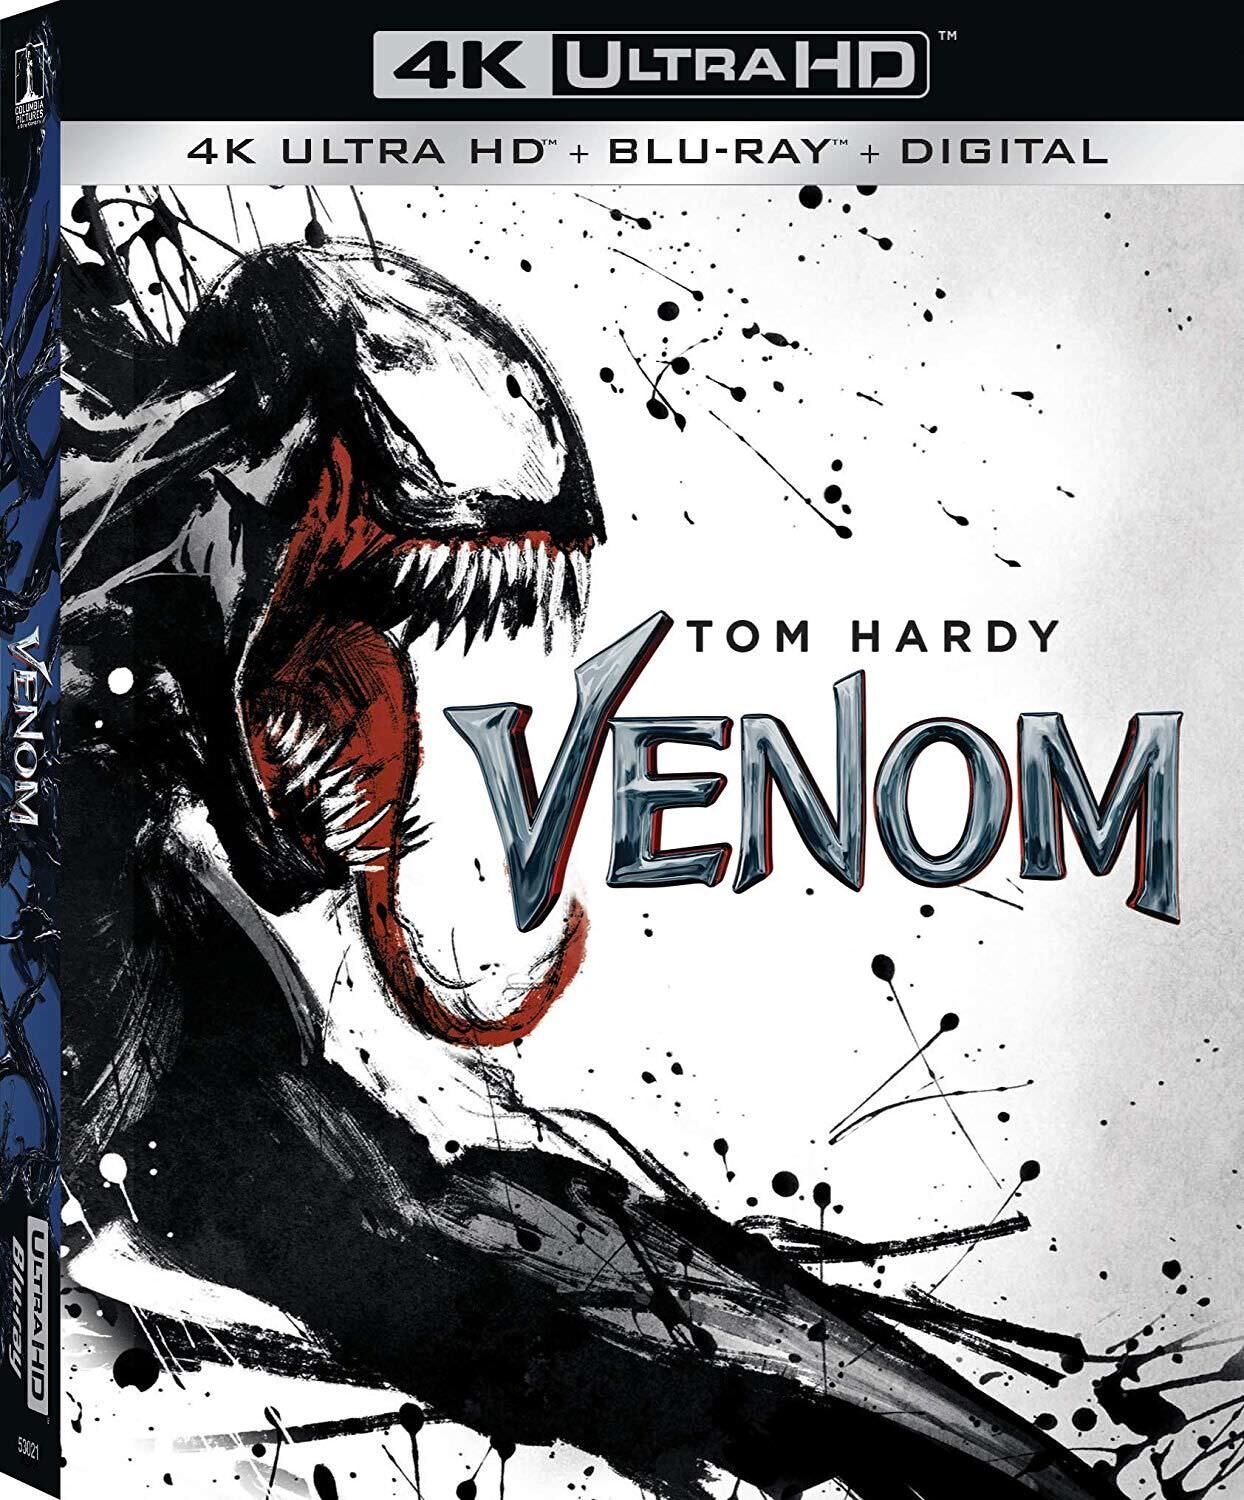 [毒液].Venom.2018.UHD.BluRay.2160p.HEVC.TrueHD.7.1-BeyondHD     54.34G-1.jpg